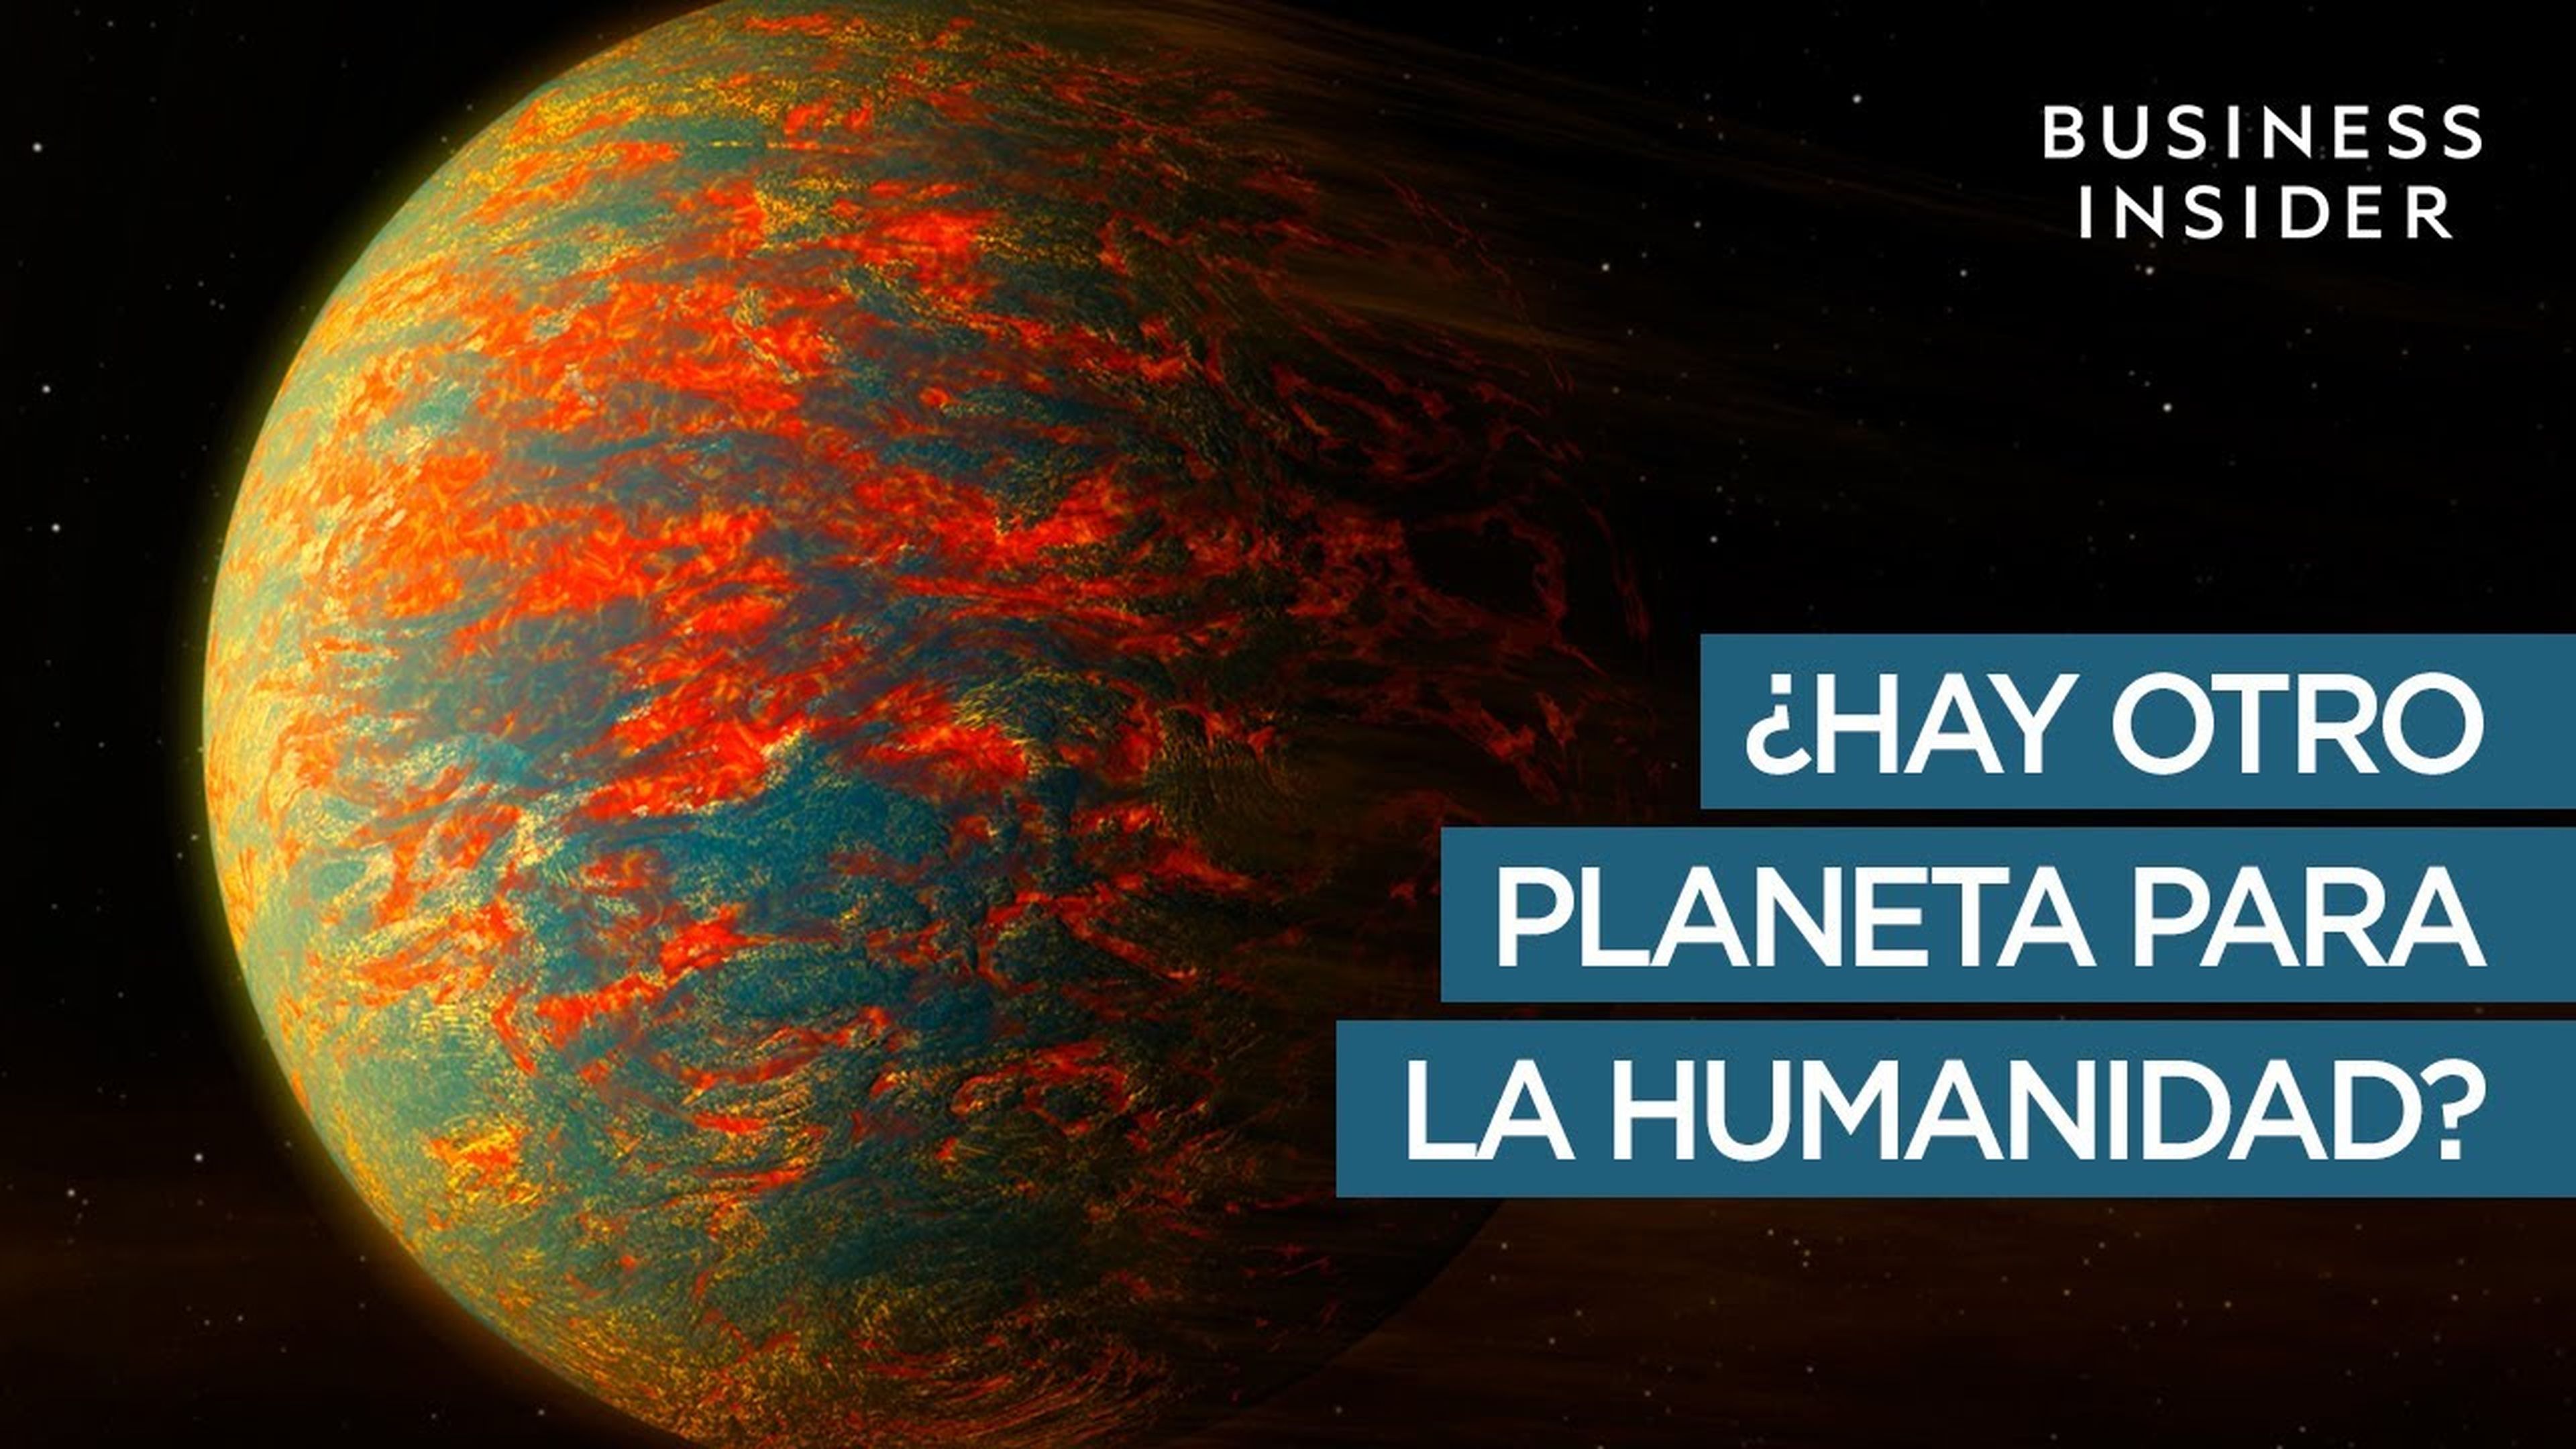 ¿Hay otro planeta para la humanidad?